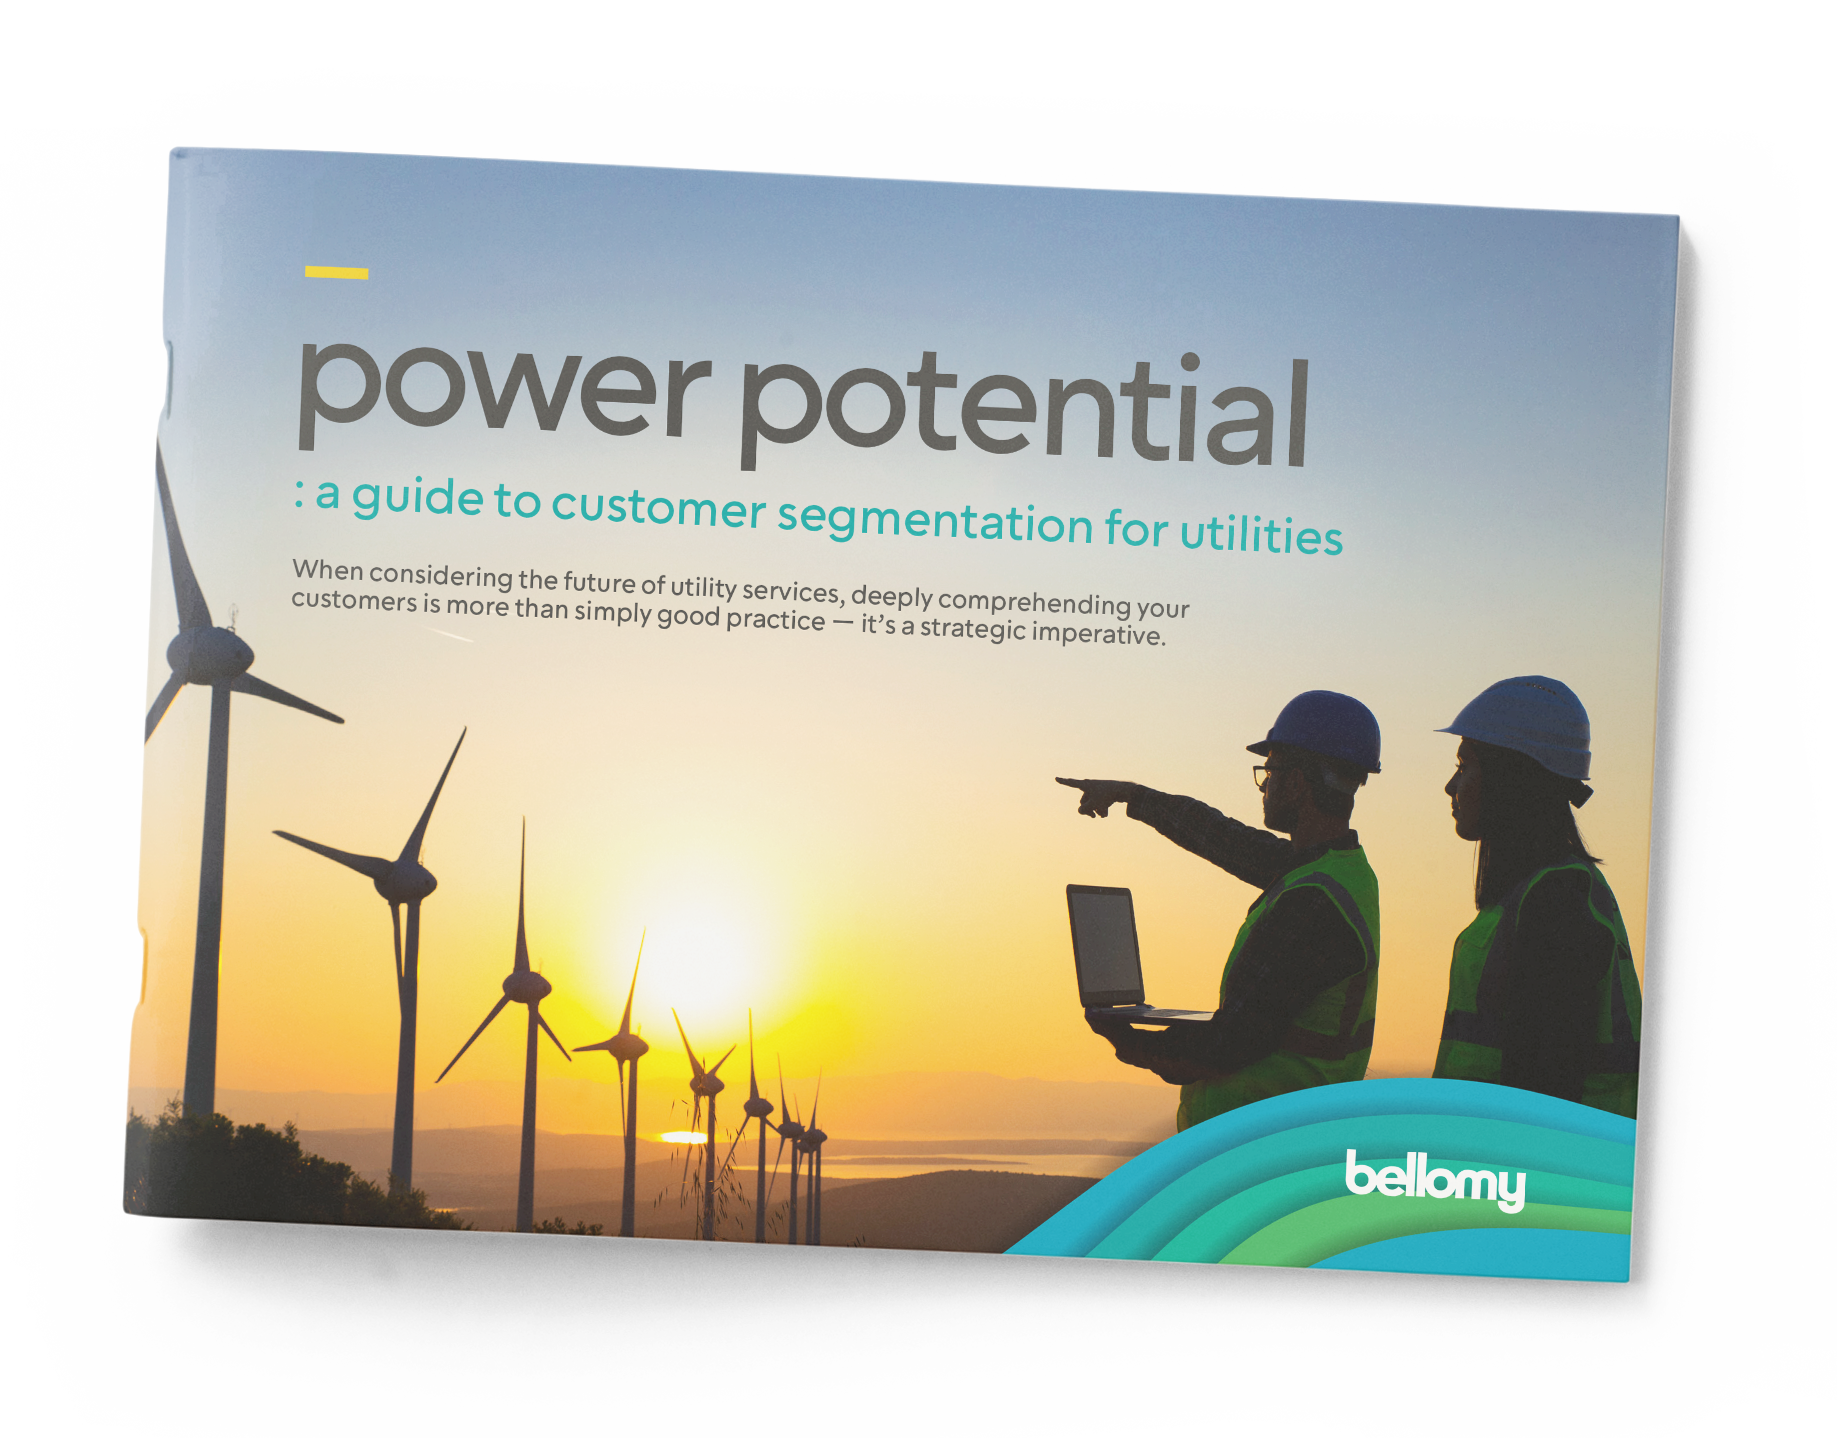 Bellomy Power Potential Guide for Customer Segmentation for Utilities